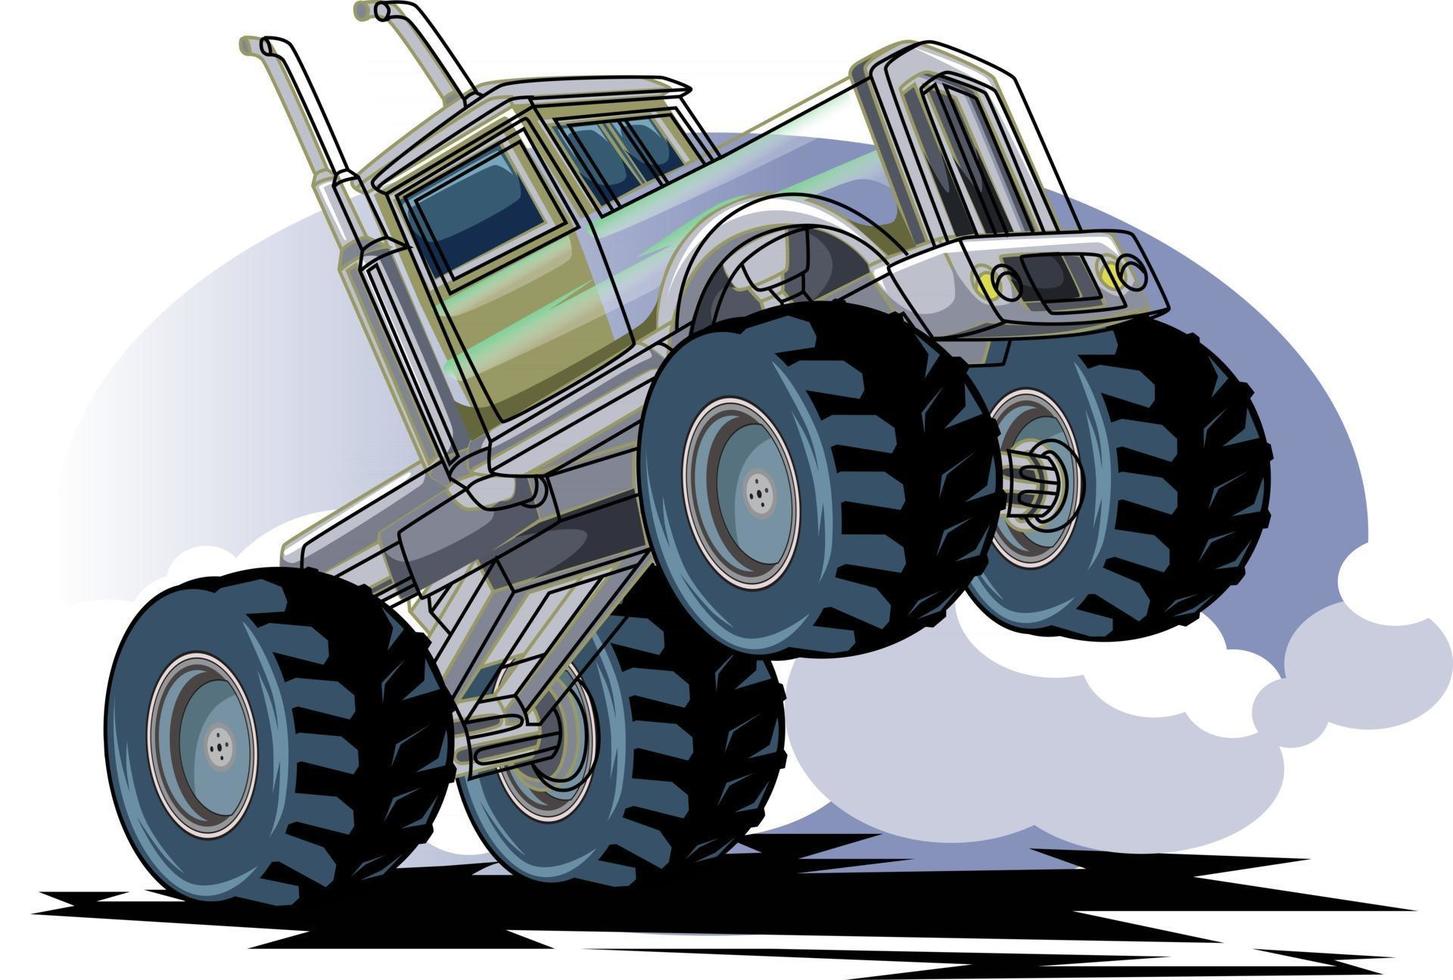 jumping big monster truck off road illustration vector